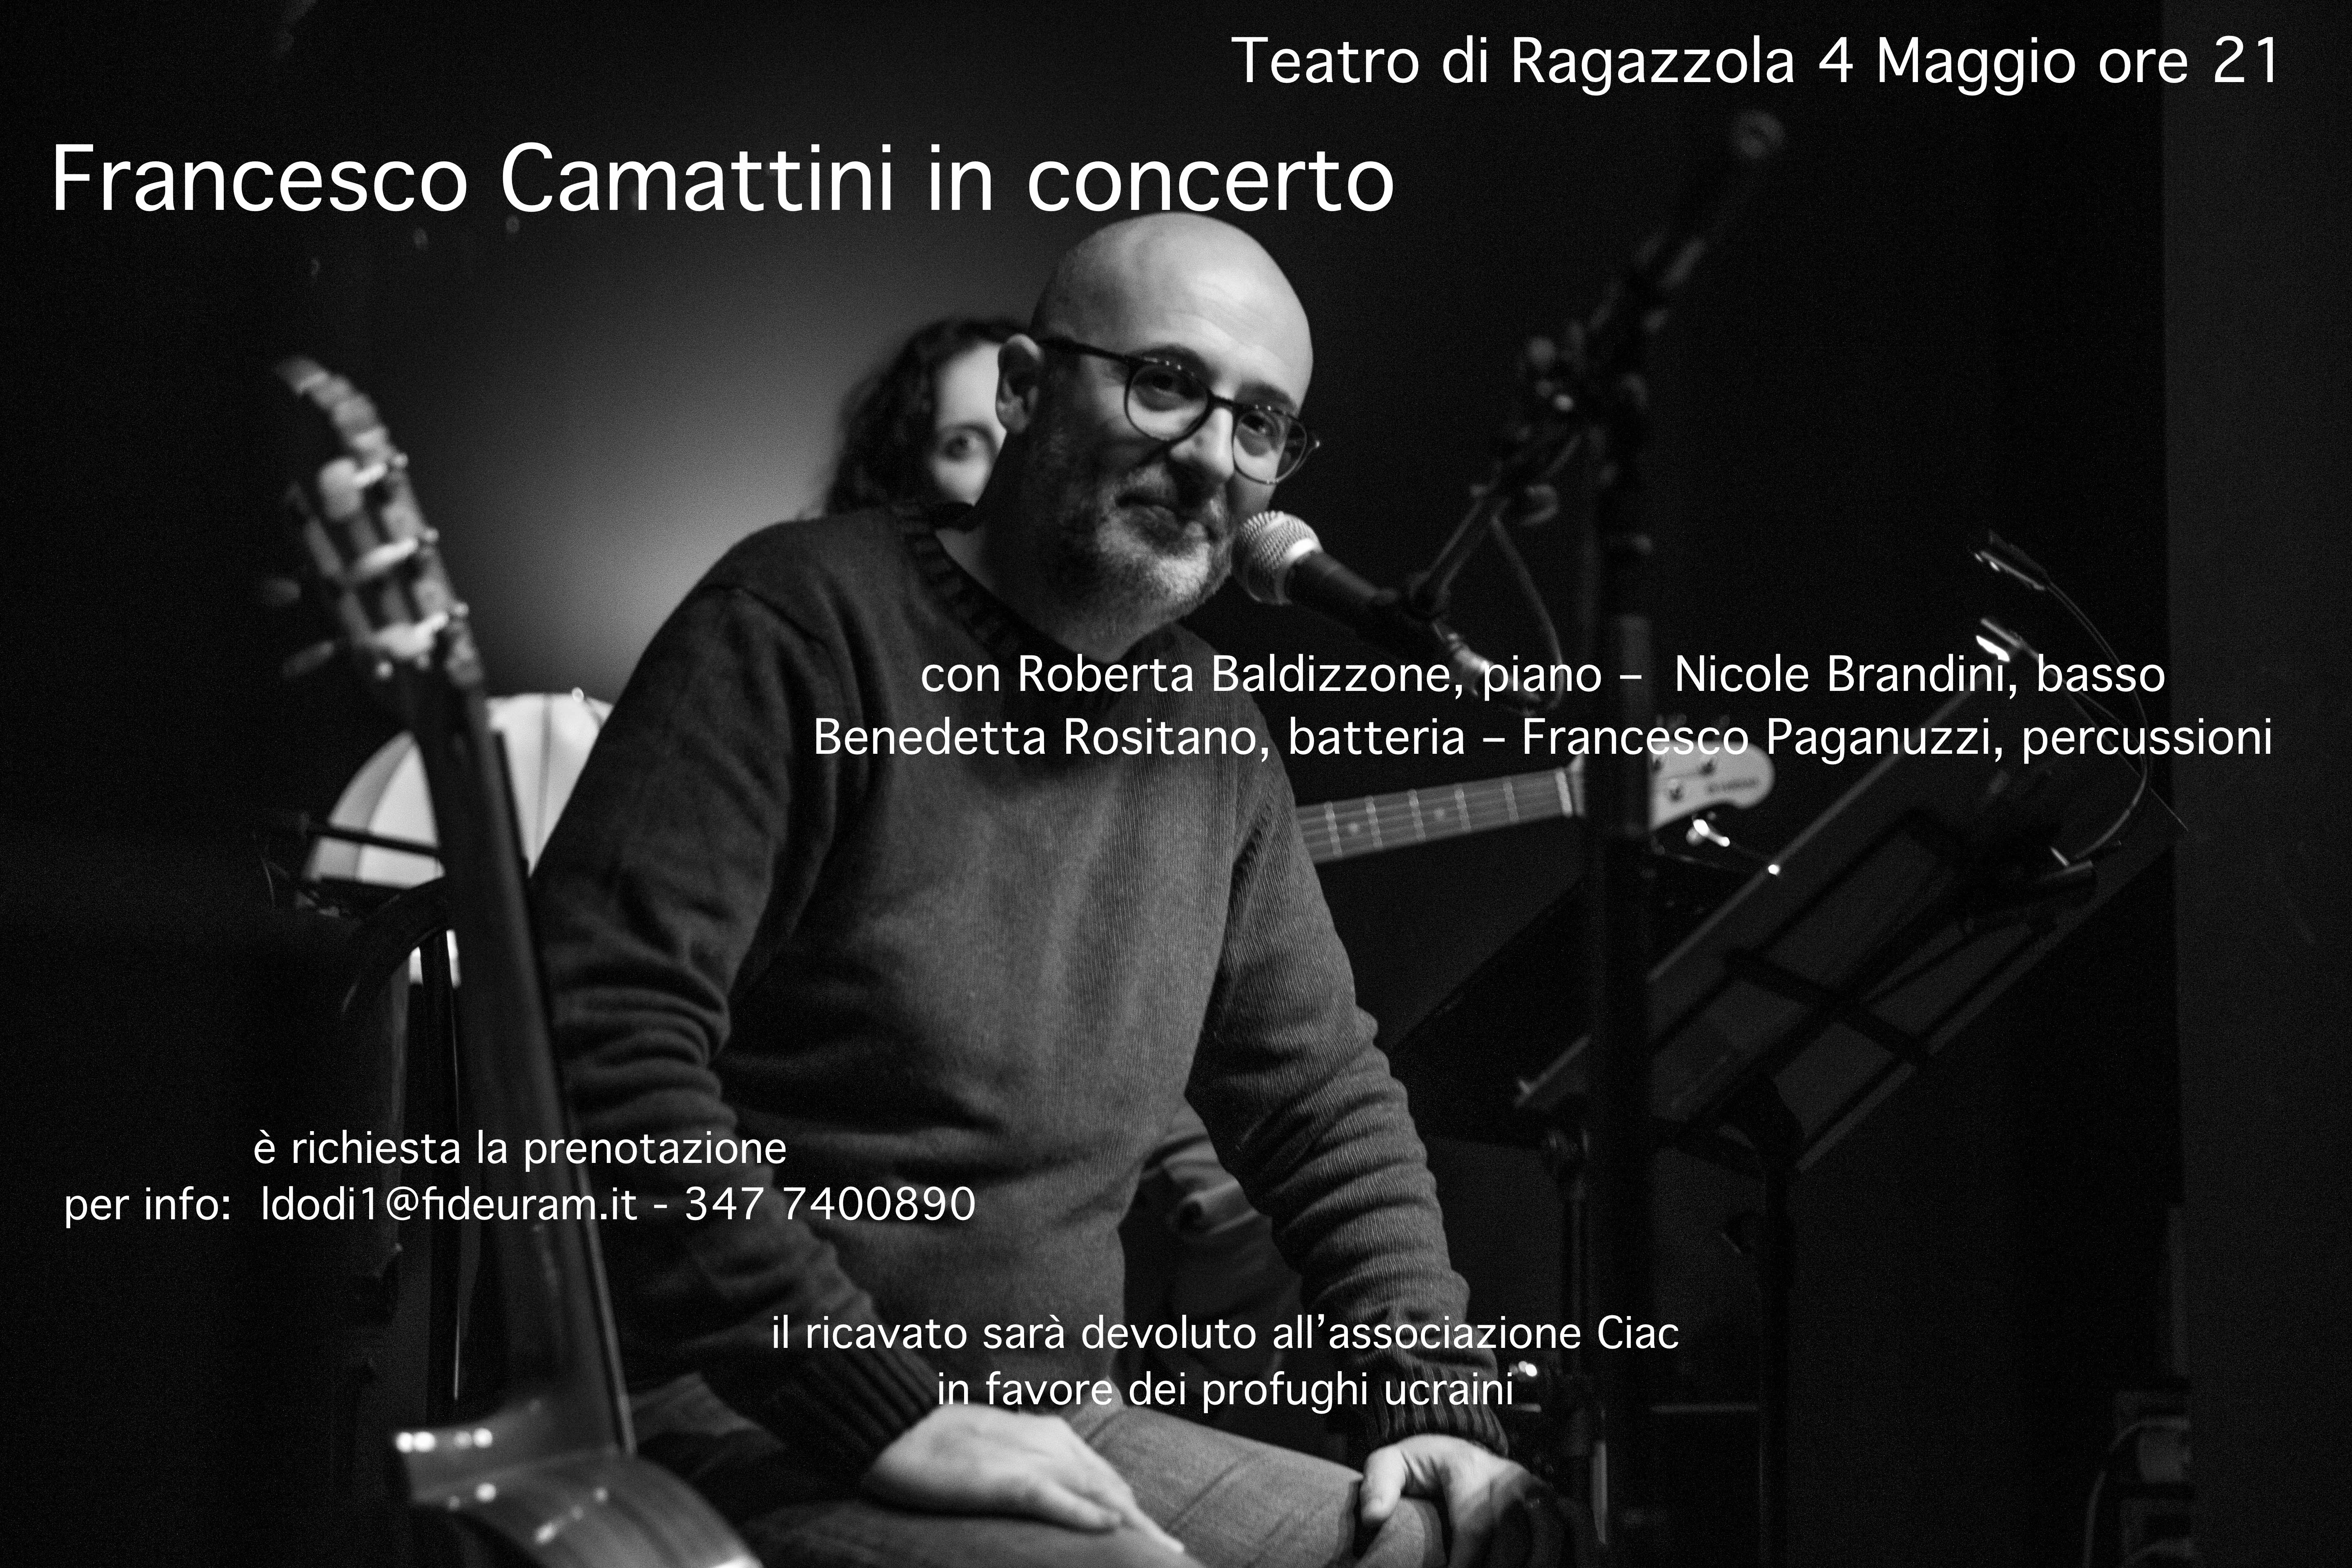 Francesco Camattini in concerto per Ciac